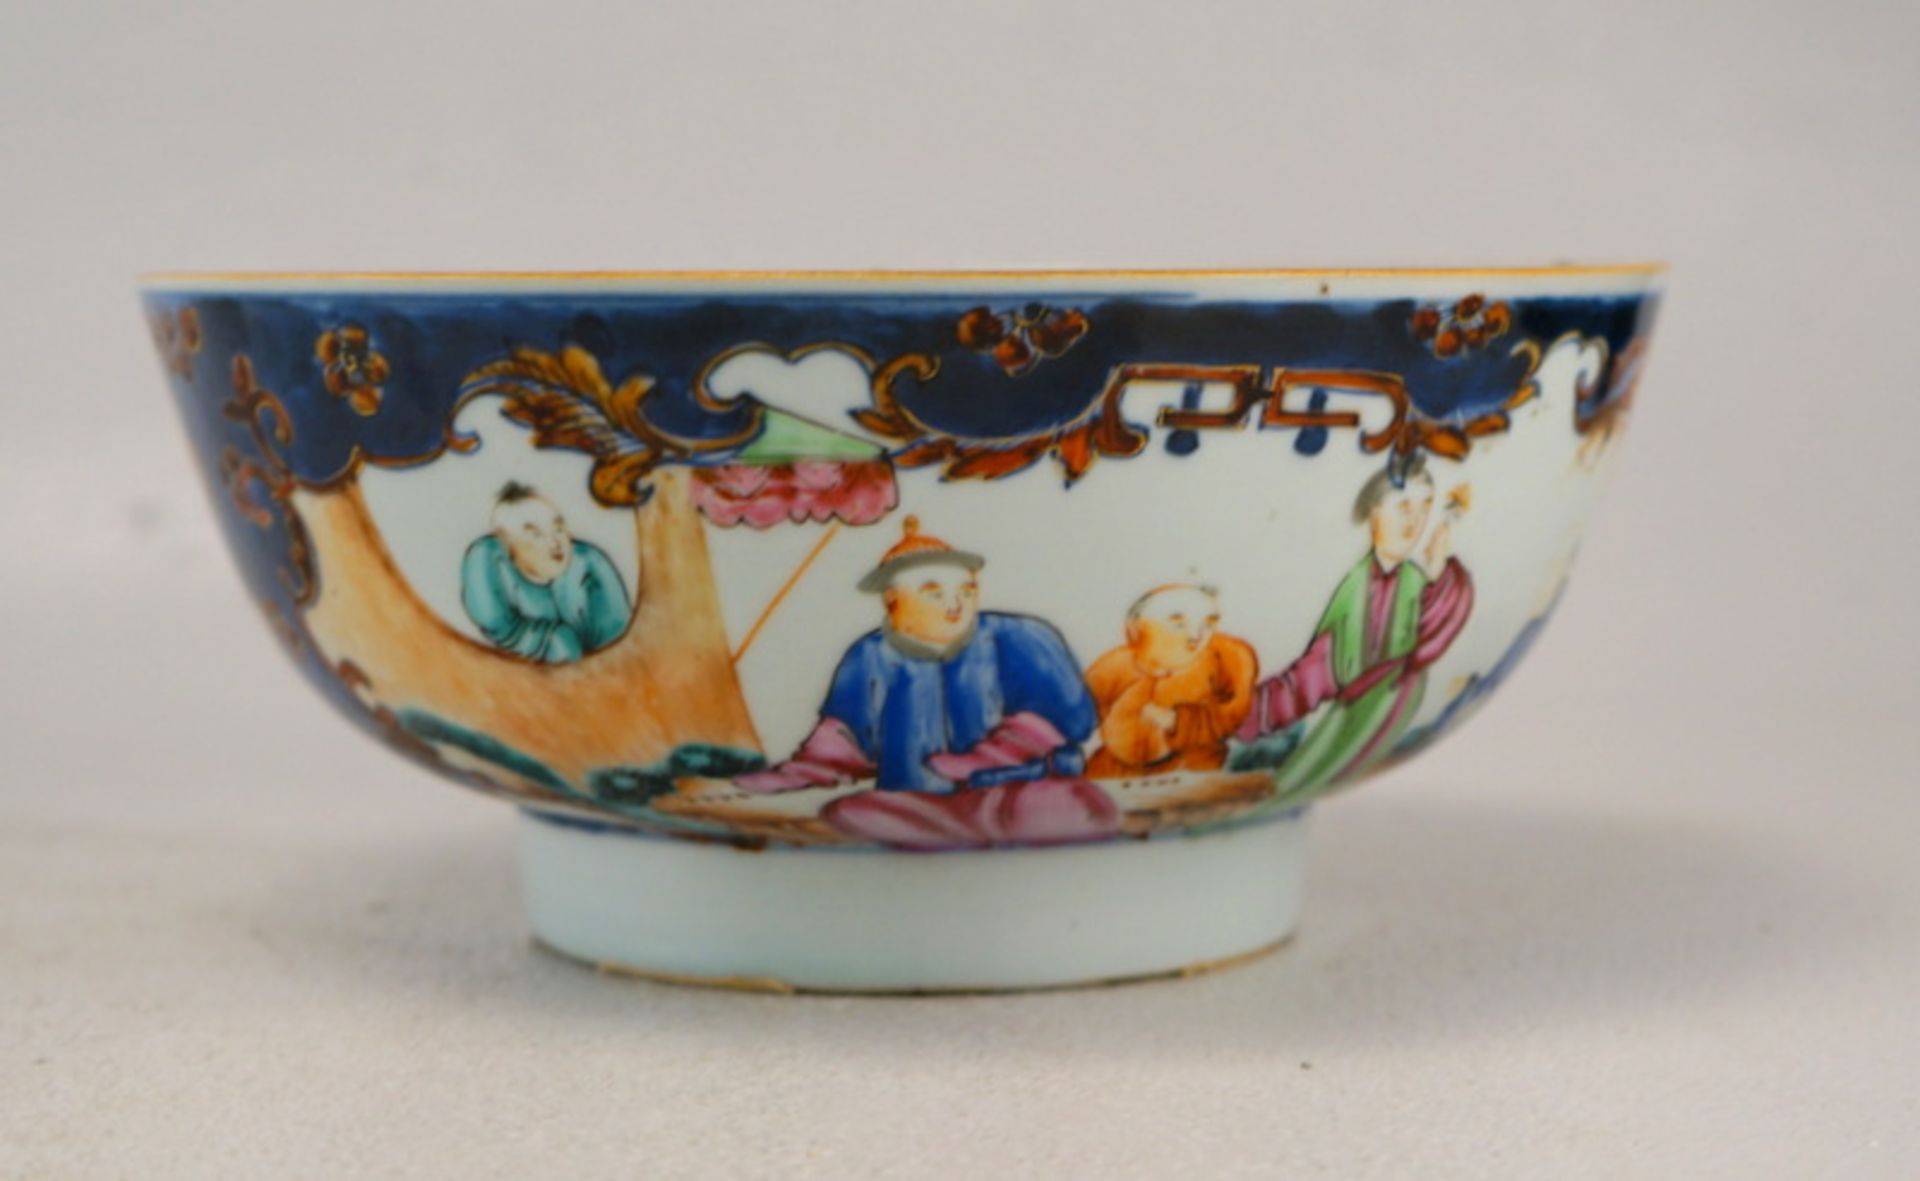 Großer Bowl, Schale Mandarin Dekor ca. 1780-1820, China - Bild 3 aus 4